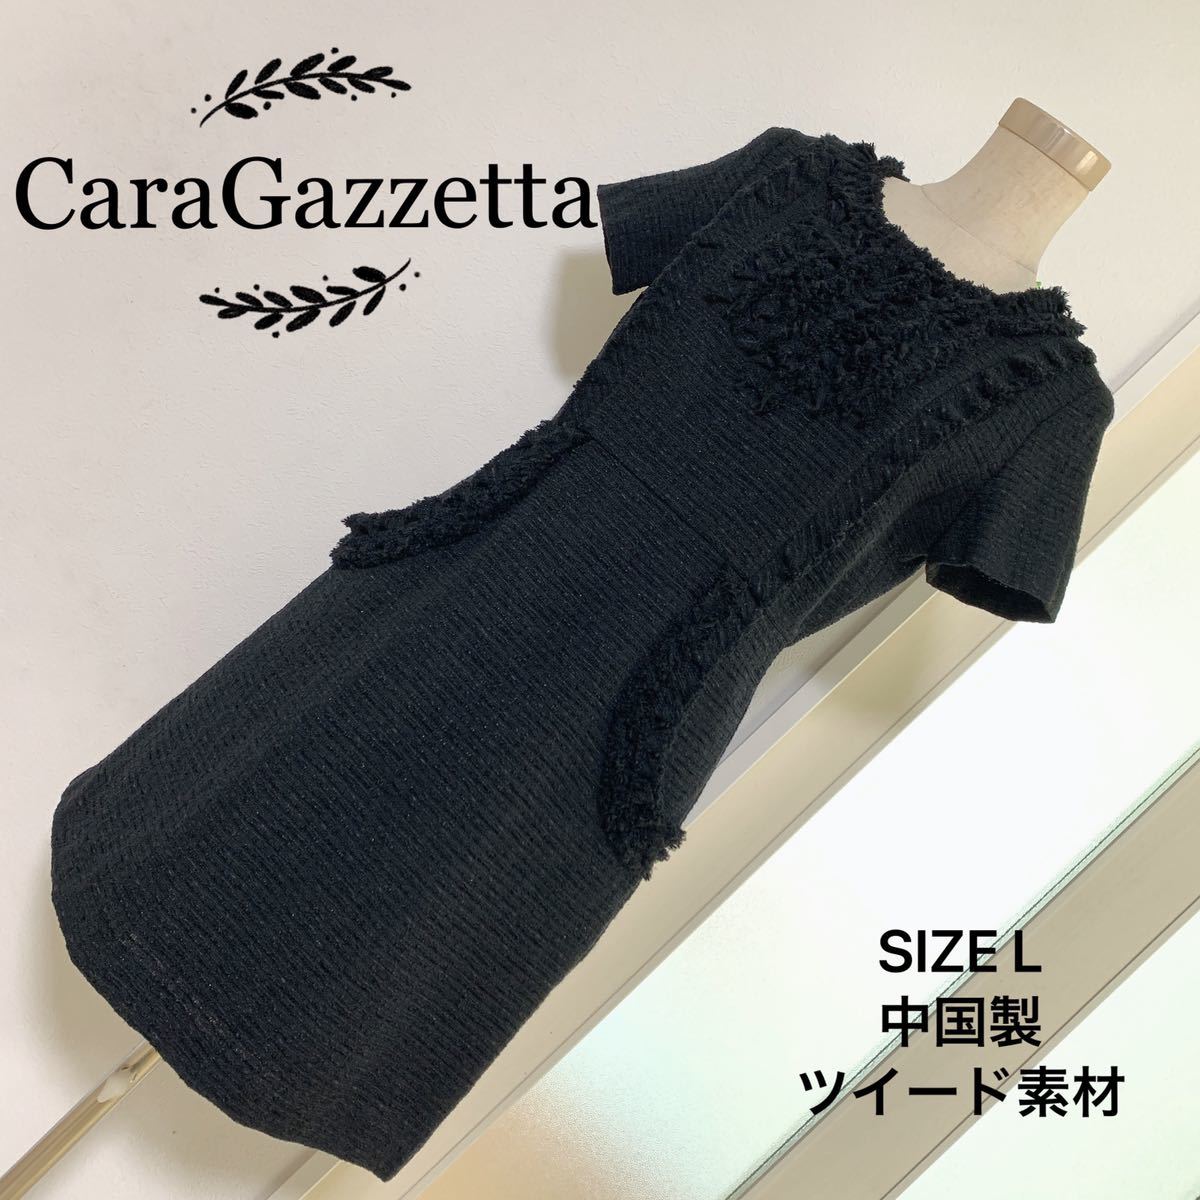 激安/新作 CaraGazzetta ワンピース ツイード素材 Lサイズ